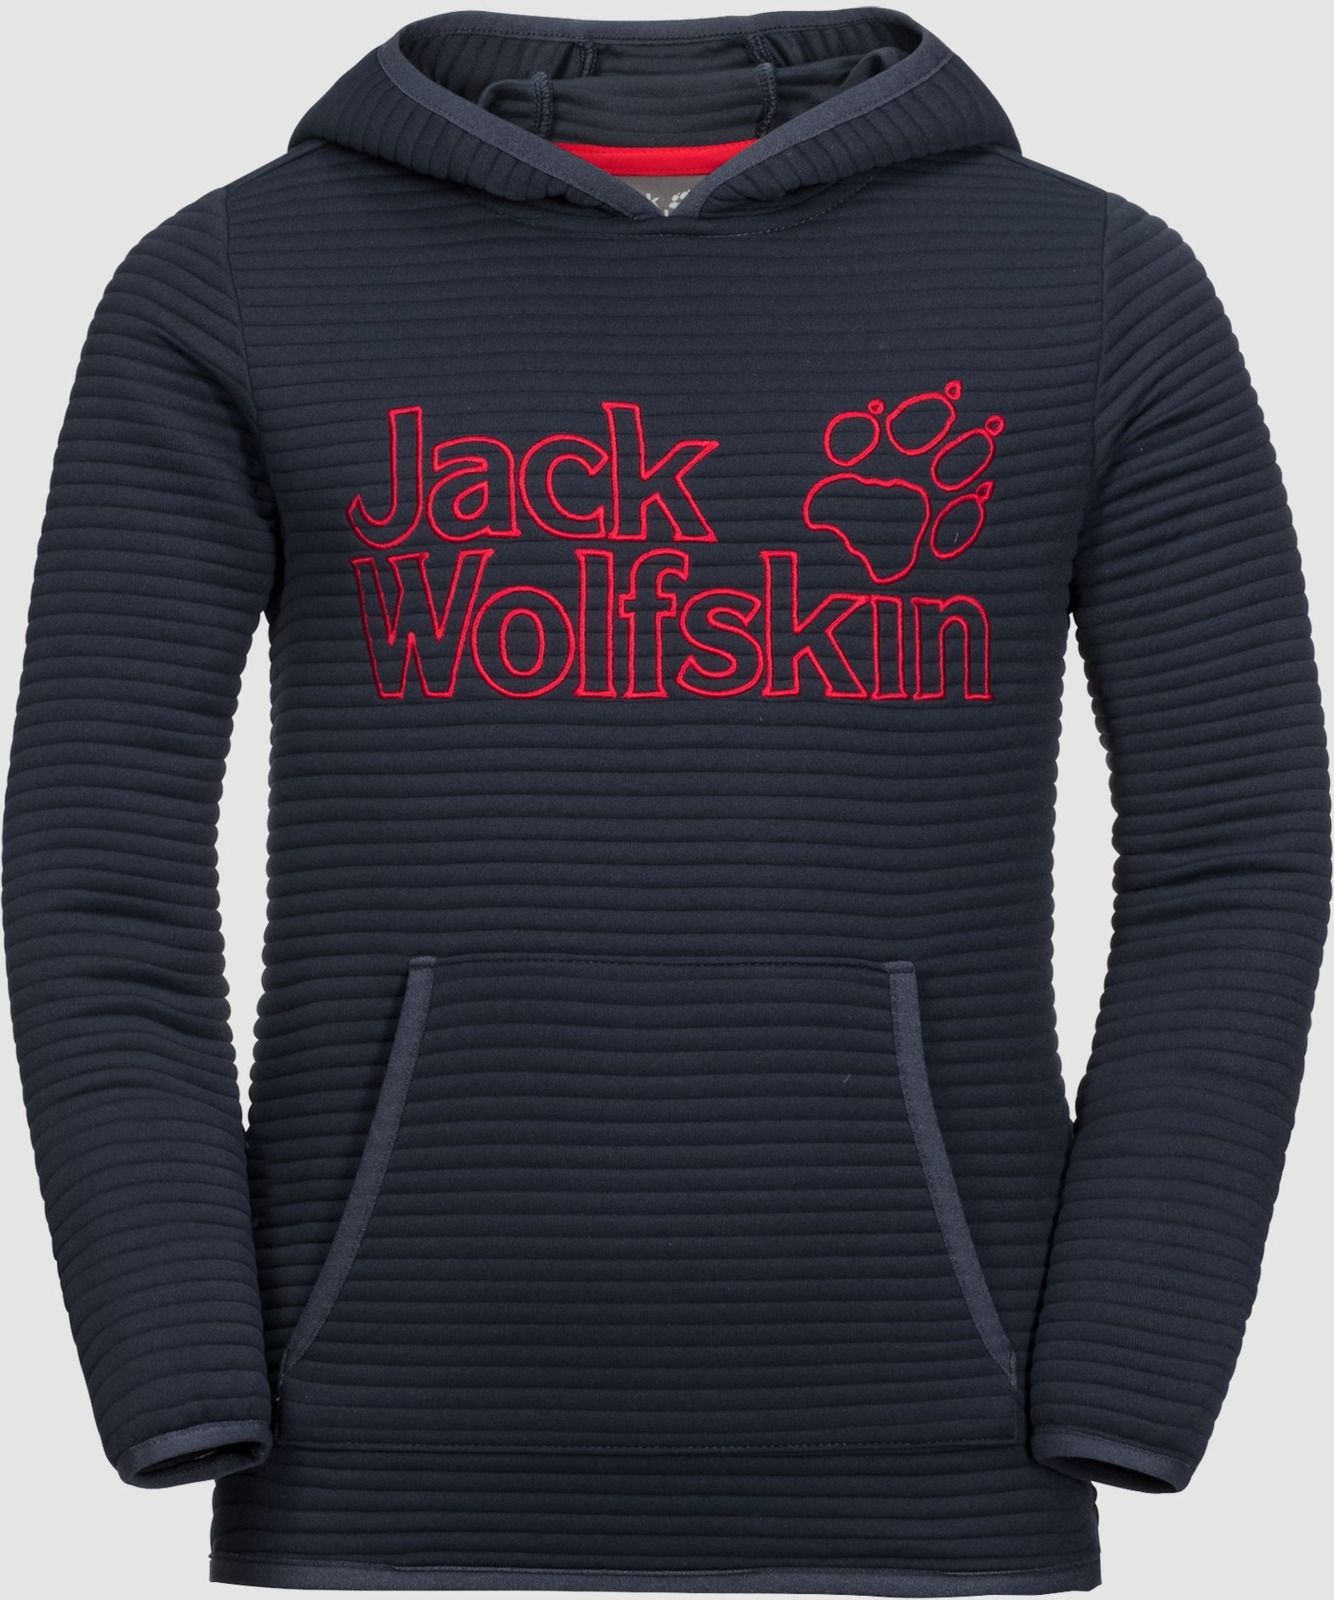   Jack Wolfskin Modesto Hoody, : -. 1607721-1010.  164/170